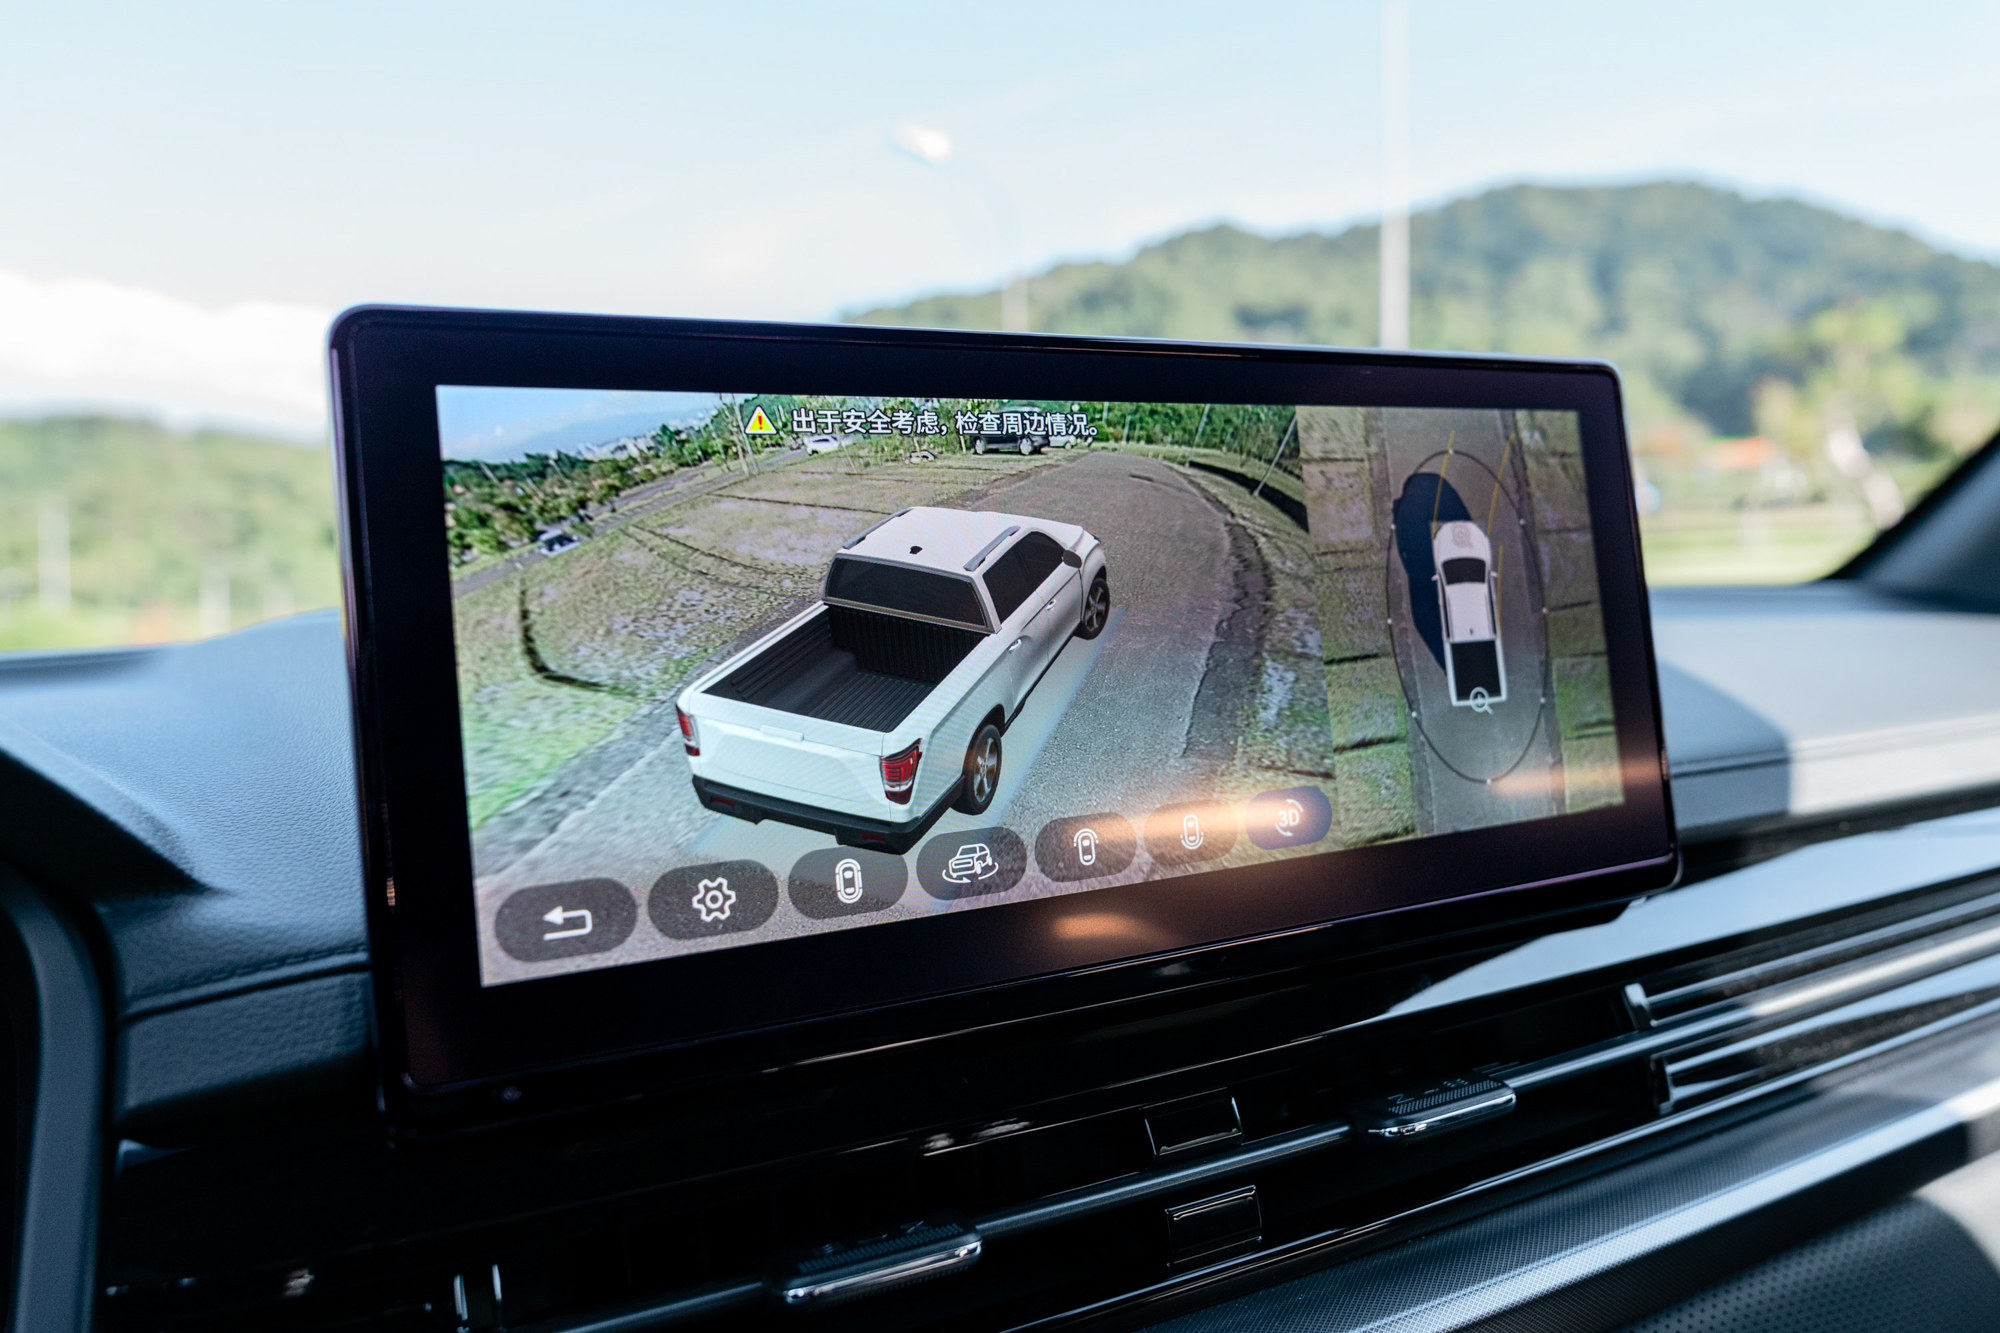 AVM 環景攝影系統方便駕駛更清楚車輛周遭變化。